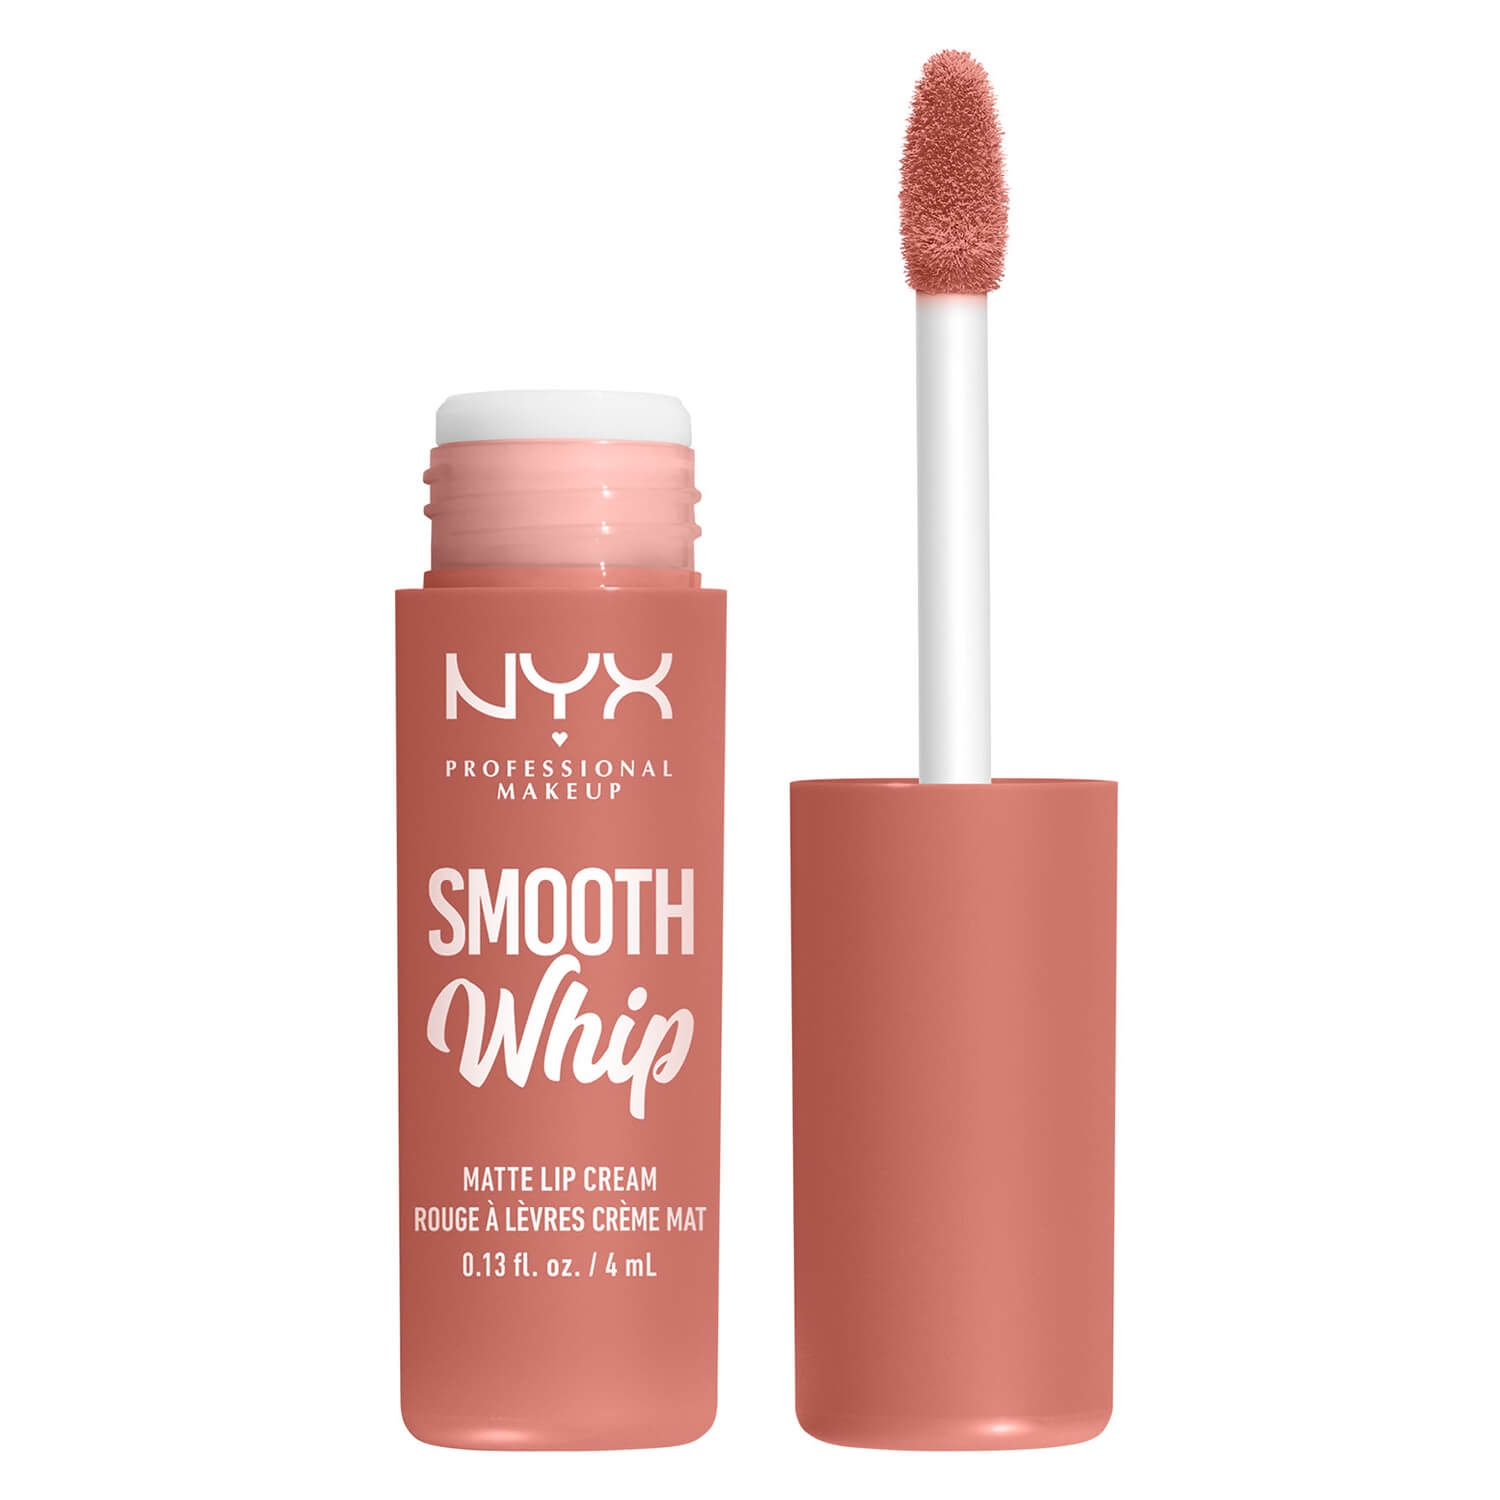 Produktbild von Smooth Whip Matte Lip Cream - Cheeks